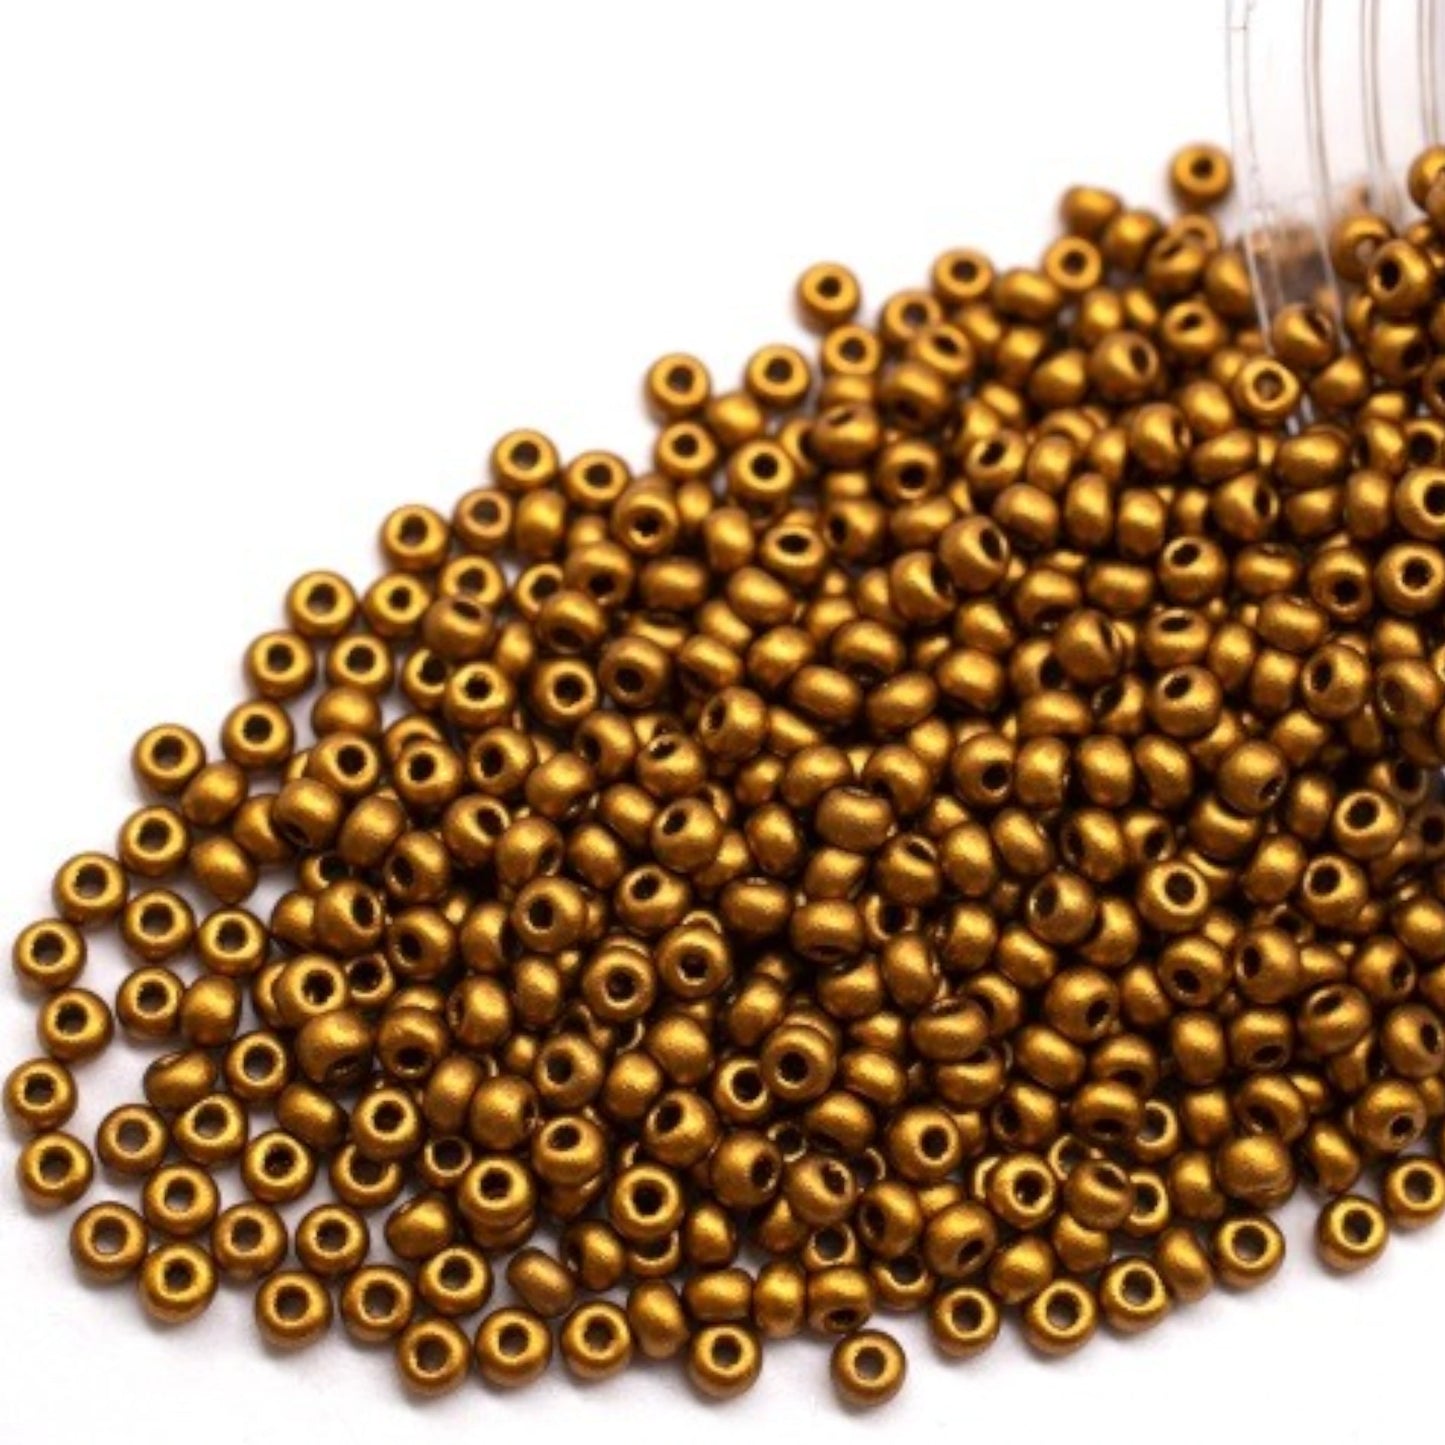 01740 Czech seed beads PRECIOSA round 10/0 Golden metallic. Metallic - Opaque Bronze.